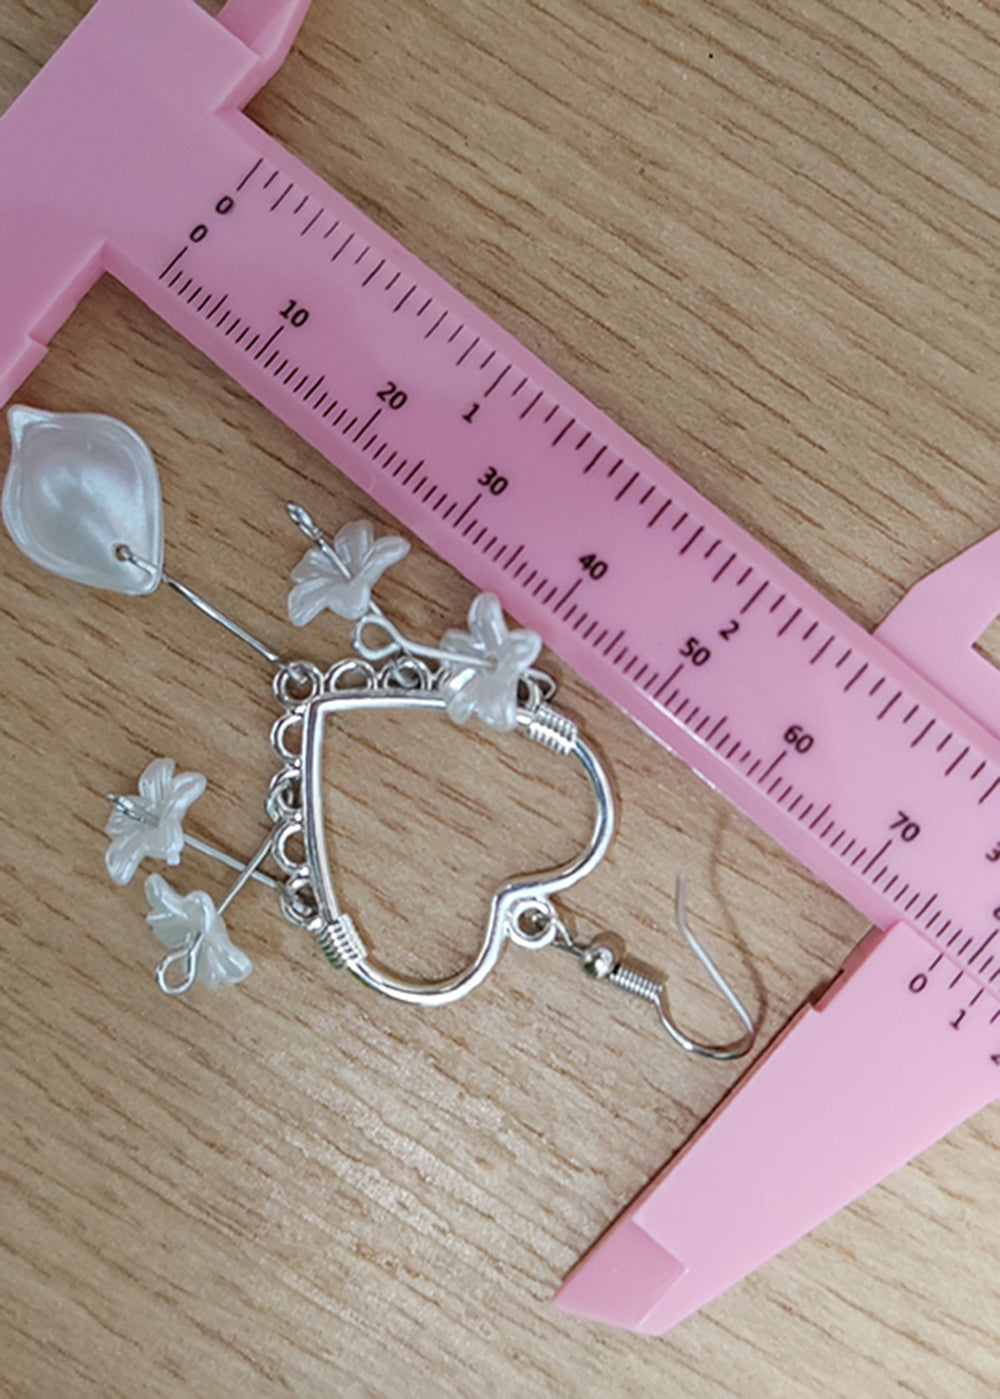 Fine White Flower Acrylic Heart-shaped Drop Earrings